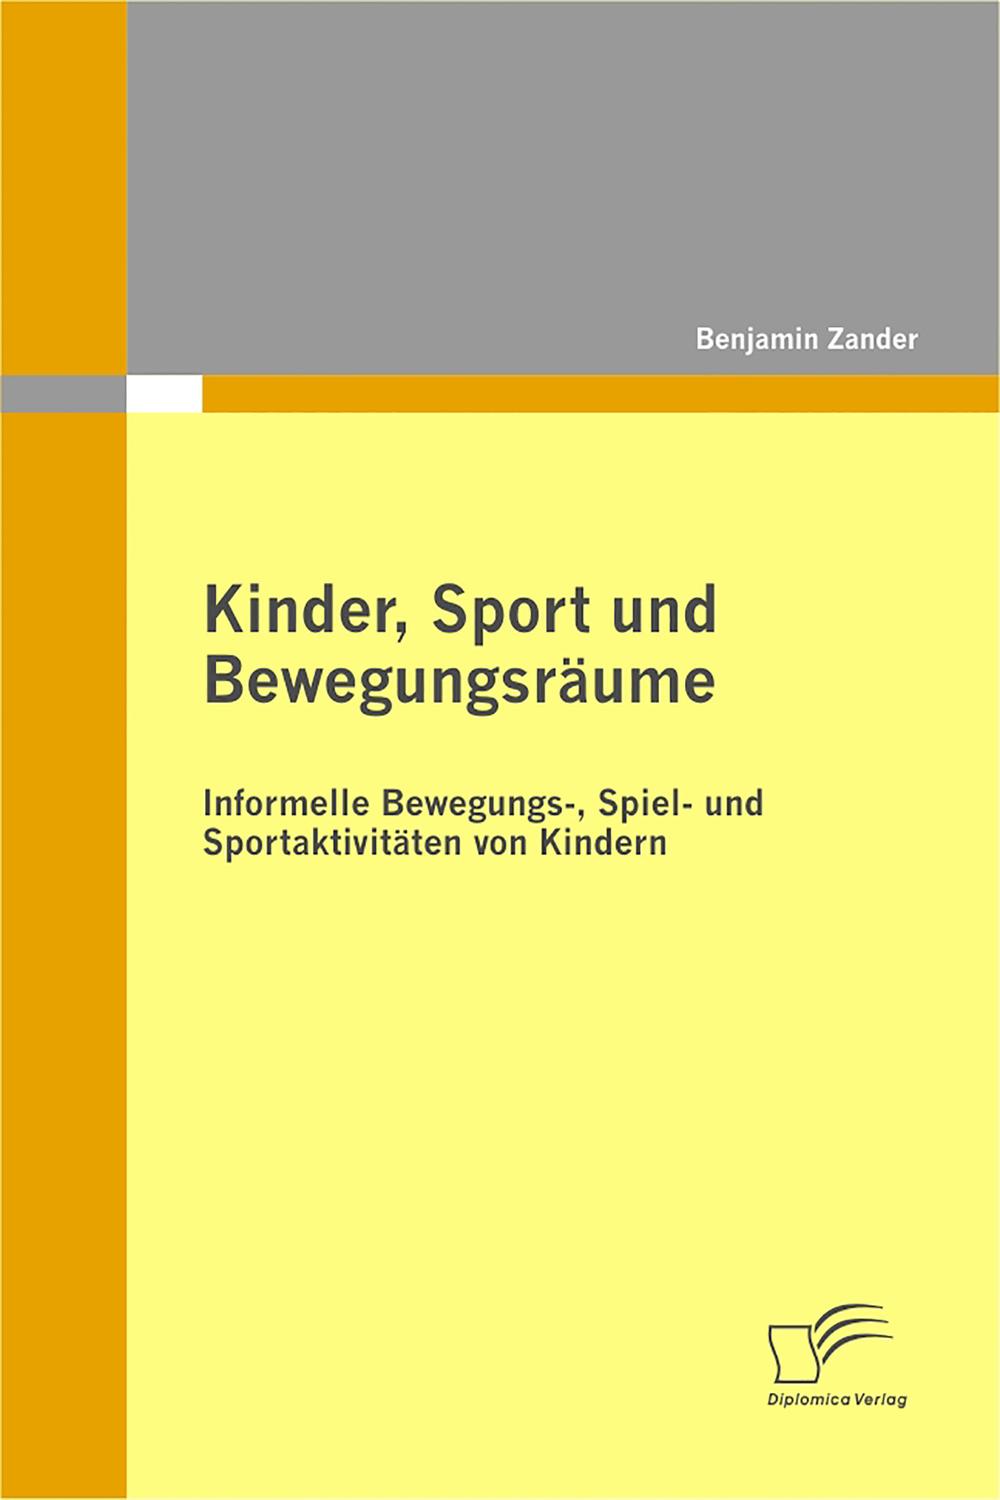 Kinder, Sport und Bewegungsräume: Informelle Bewegungs-, Spiel- und Sportaktivitäten von Kindern - Benjamin Zander